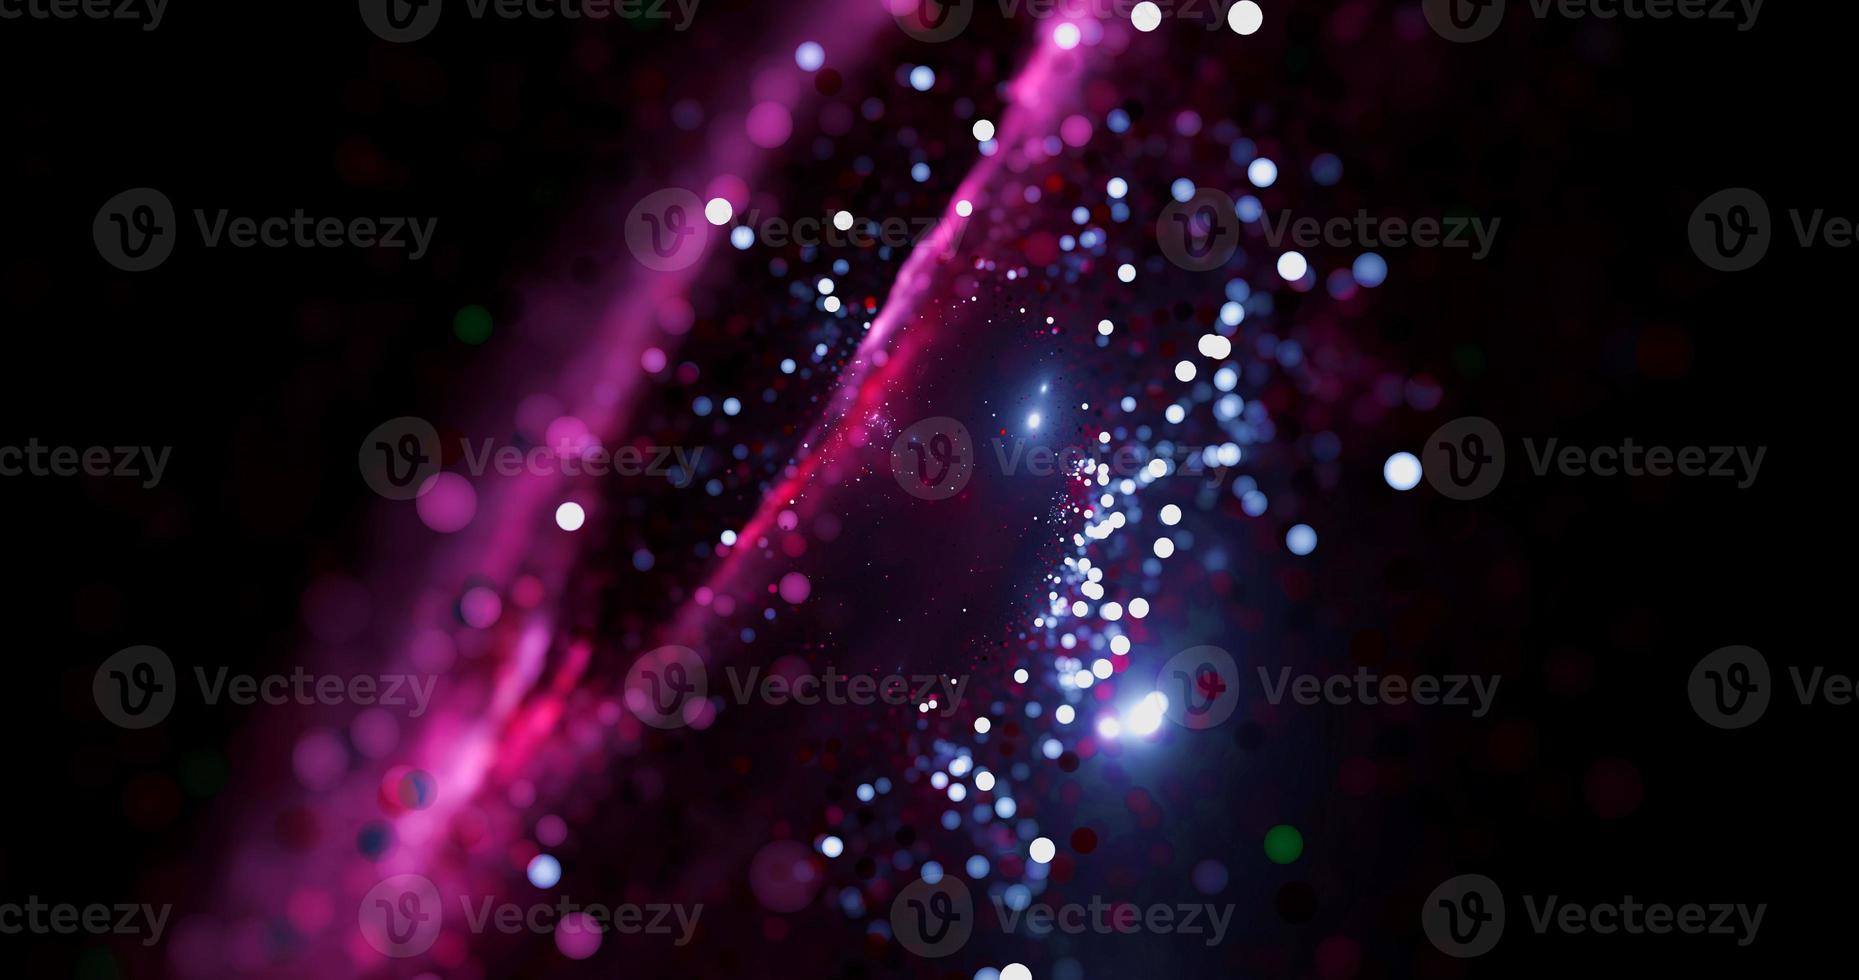 abstrato luz rosa galáxia borrão brilho vintage espaço elegante colorido fumaça universo com estrela galáxia leite stardust na galáxia preta. foto